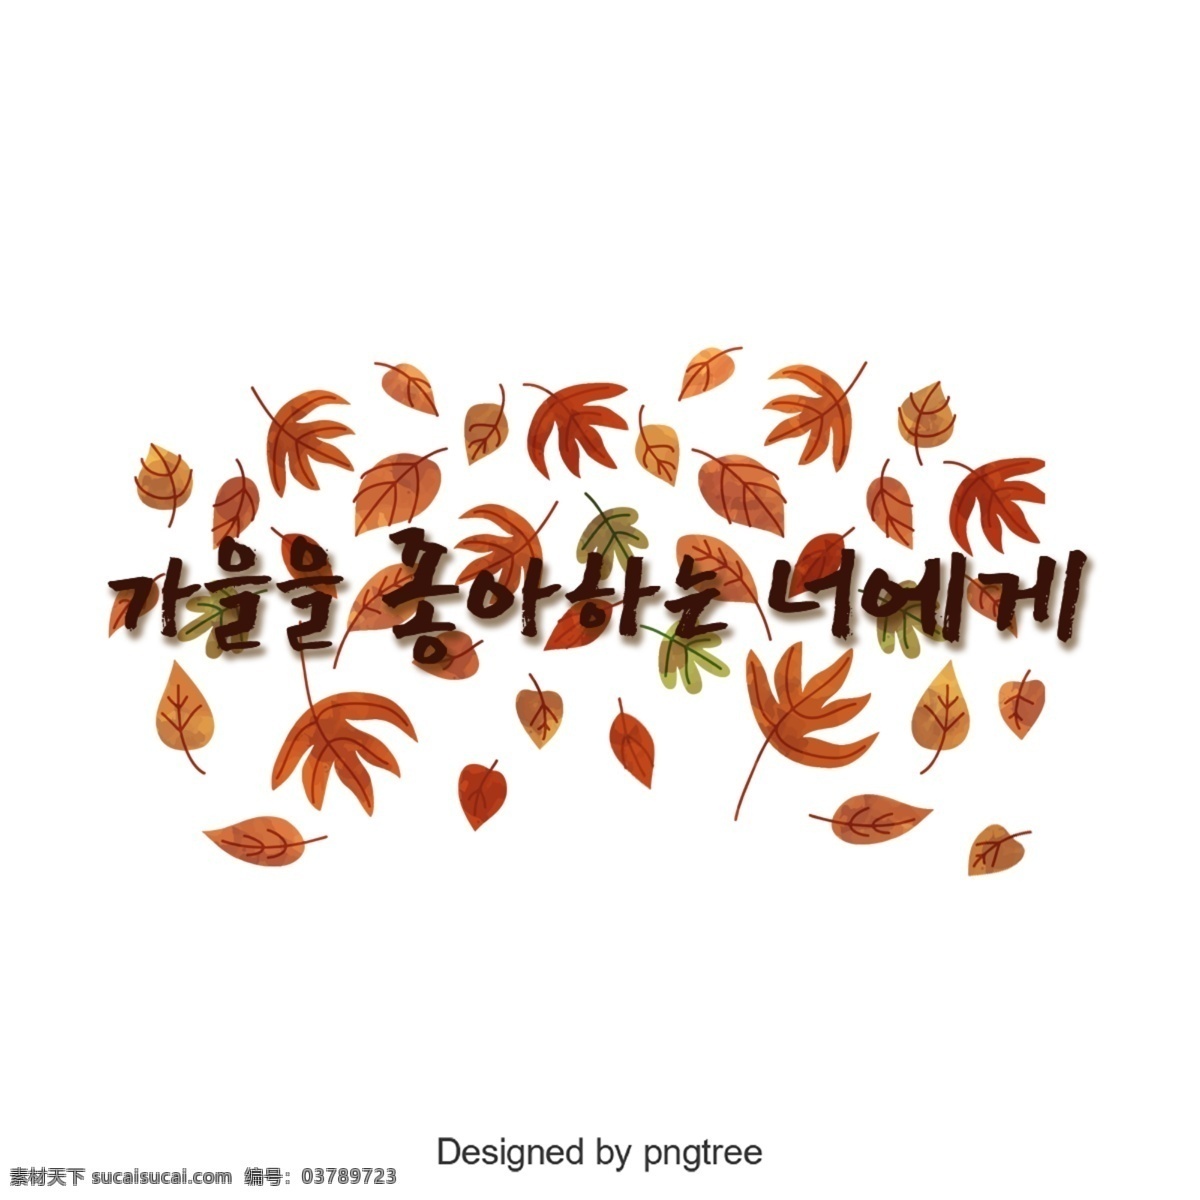 我爱你 字体 谢和 可爱 韩文 字形 秋季 枫